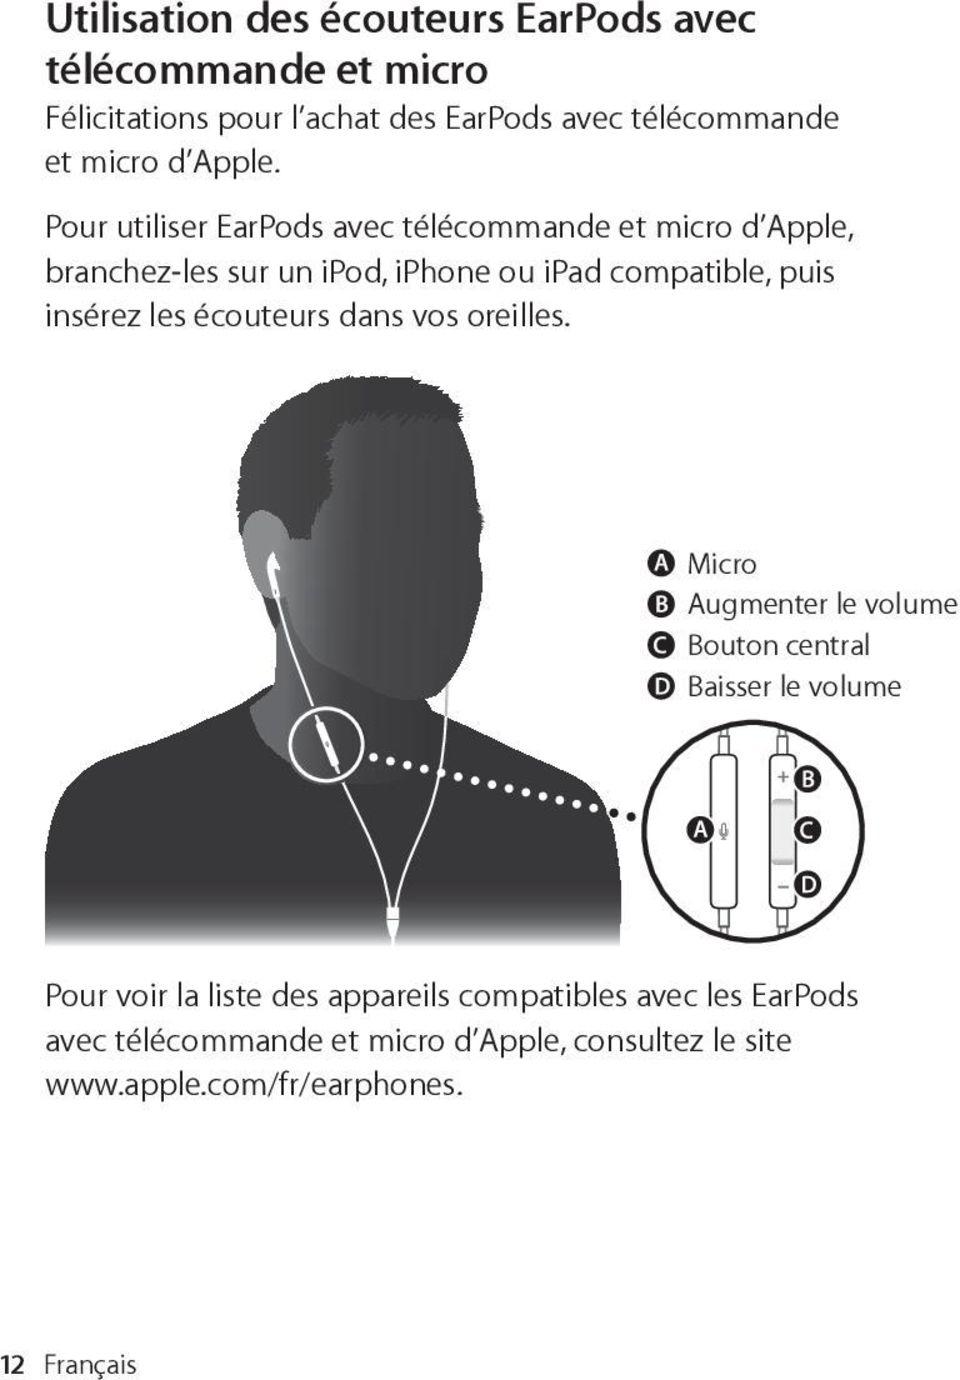 Pour utiliser EarPods avec túlúcommande et micro dæapple, branchez-les sur un ipod, iphone ou ipad compatible, puis insúrez